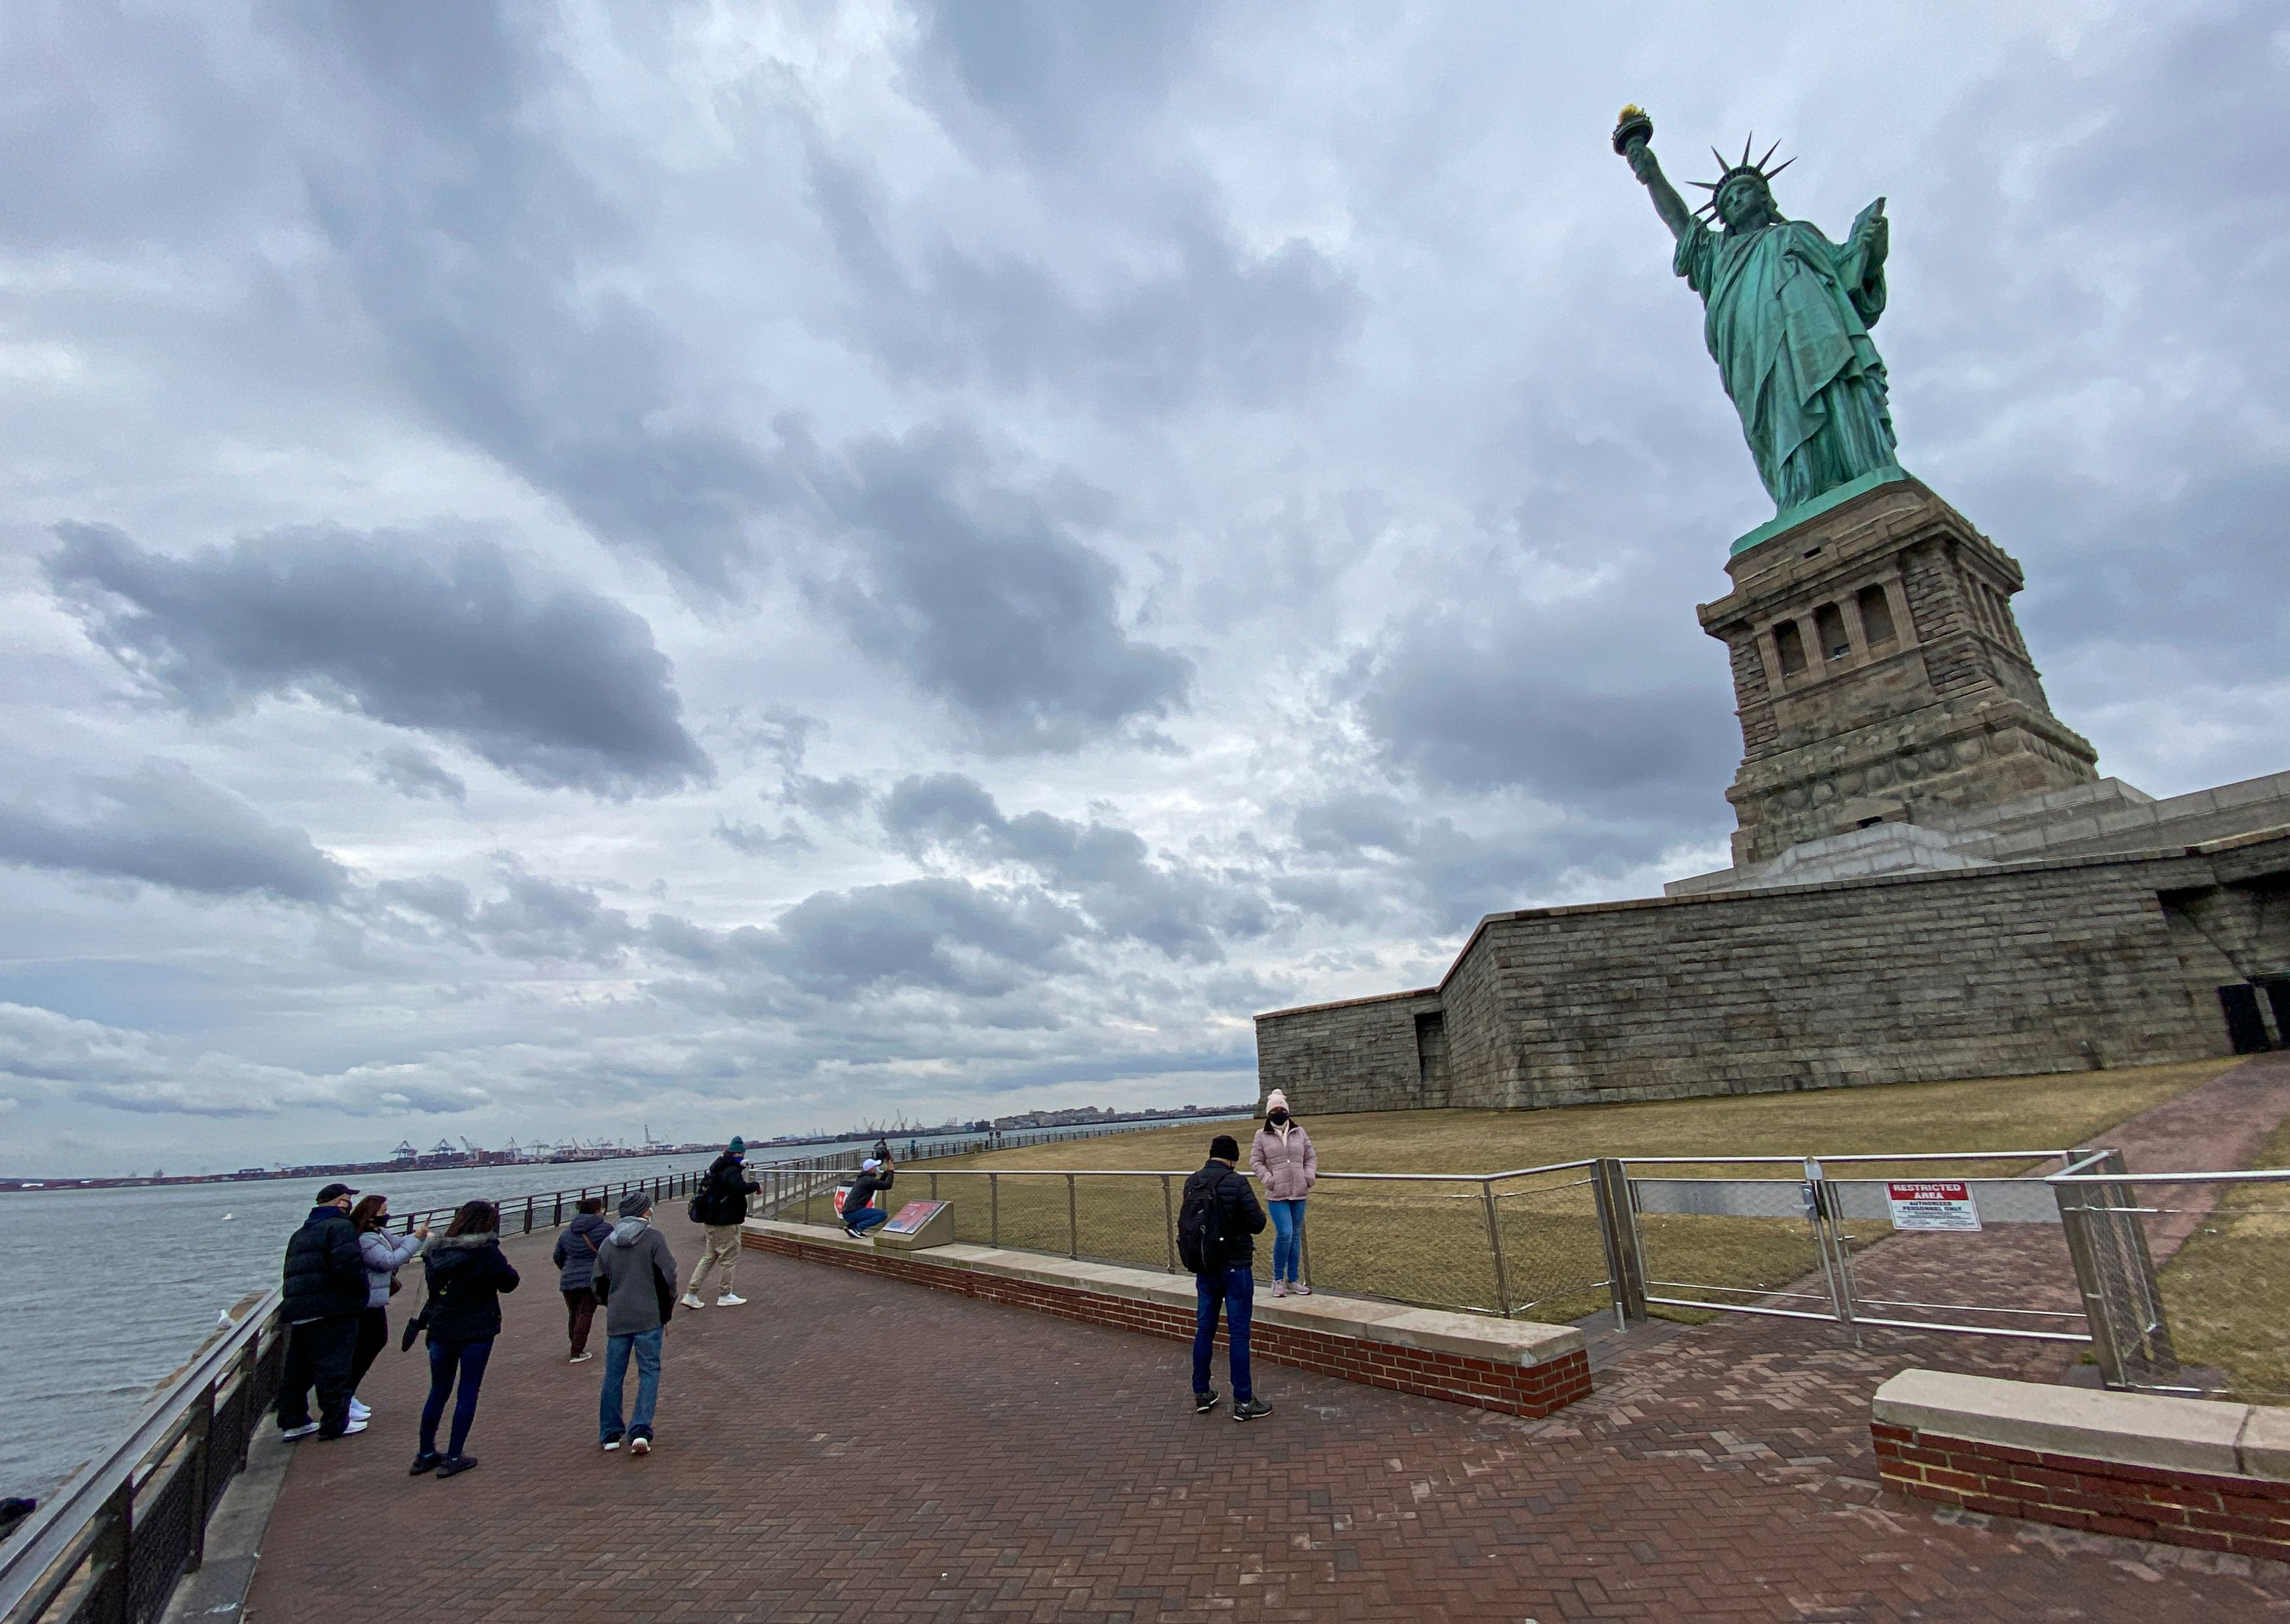 سكان نيويورك يعيدون اكتشاف مدينتهم بعدما هجرها السياح خلال الجائحة